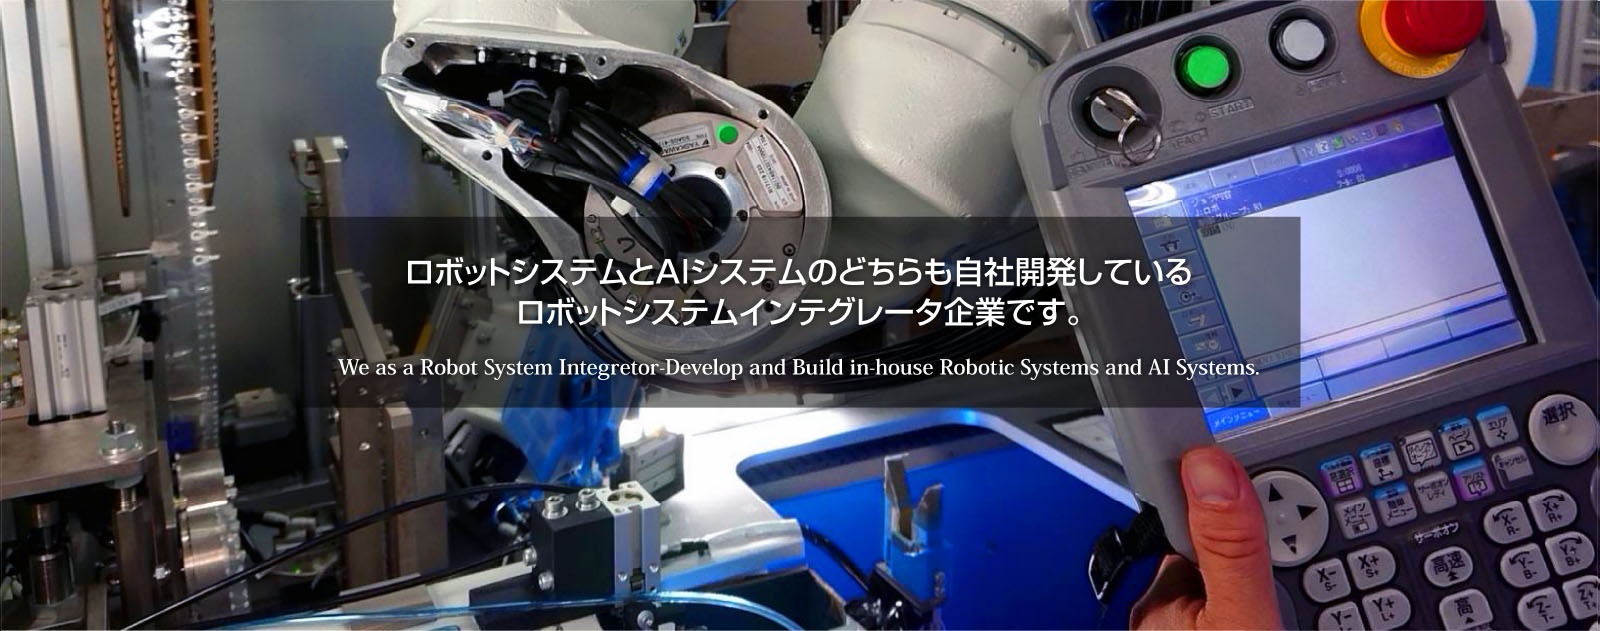 ロボットシステムとAIシステムのどちらも自社開発しているロボットシステムインテグレータ企業です。